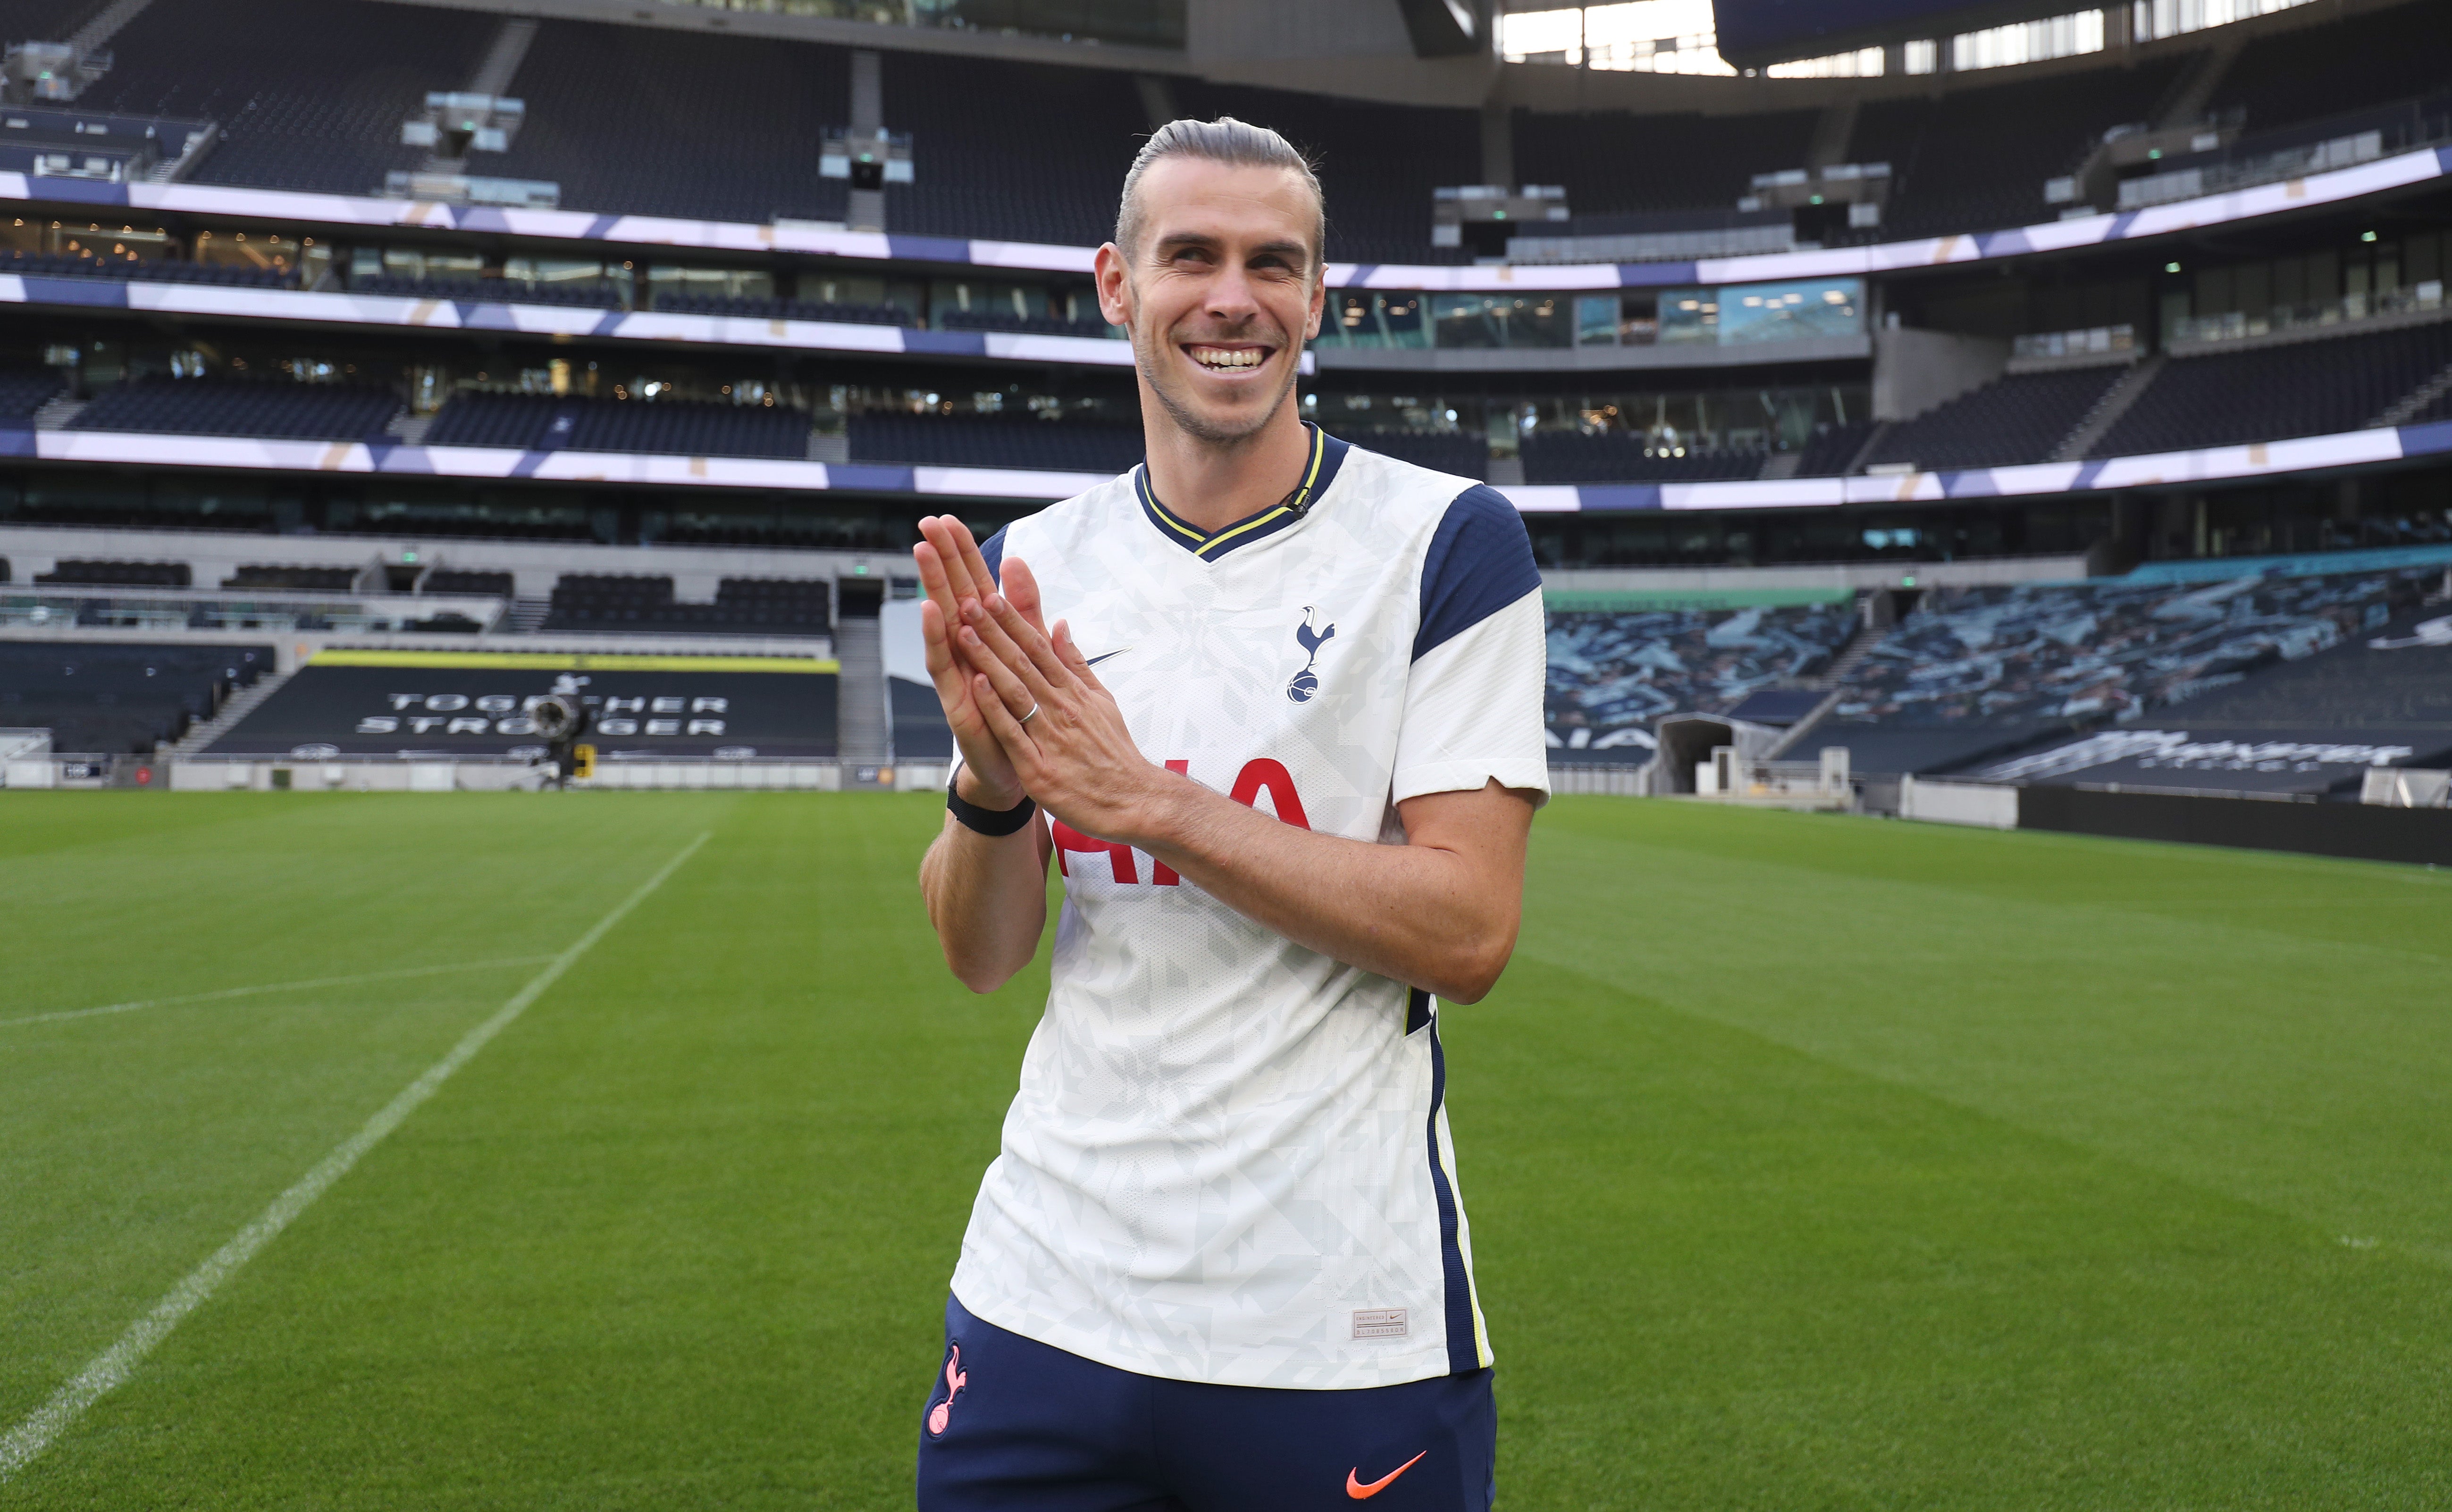 Gareth Bale poses at Tottenham's new stadium